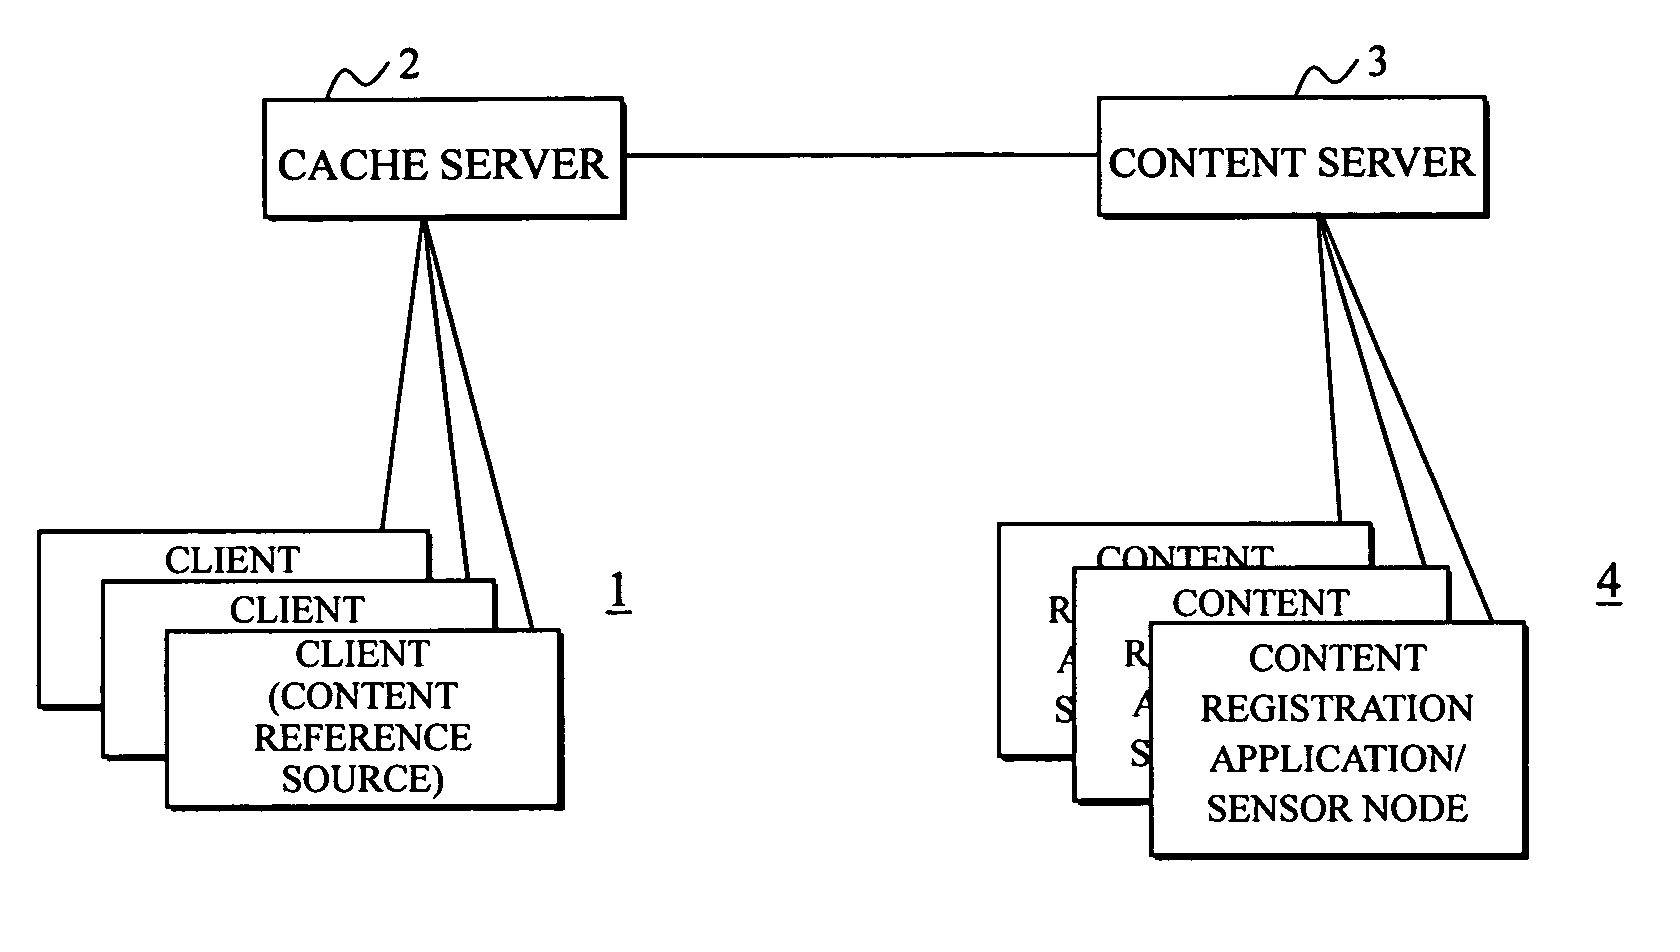 Content retrieval system